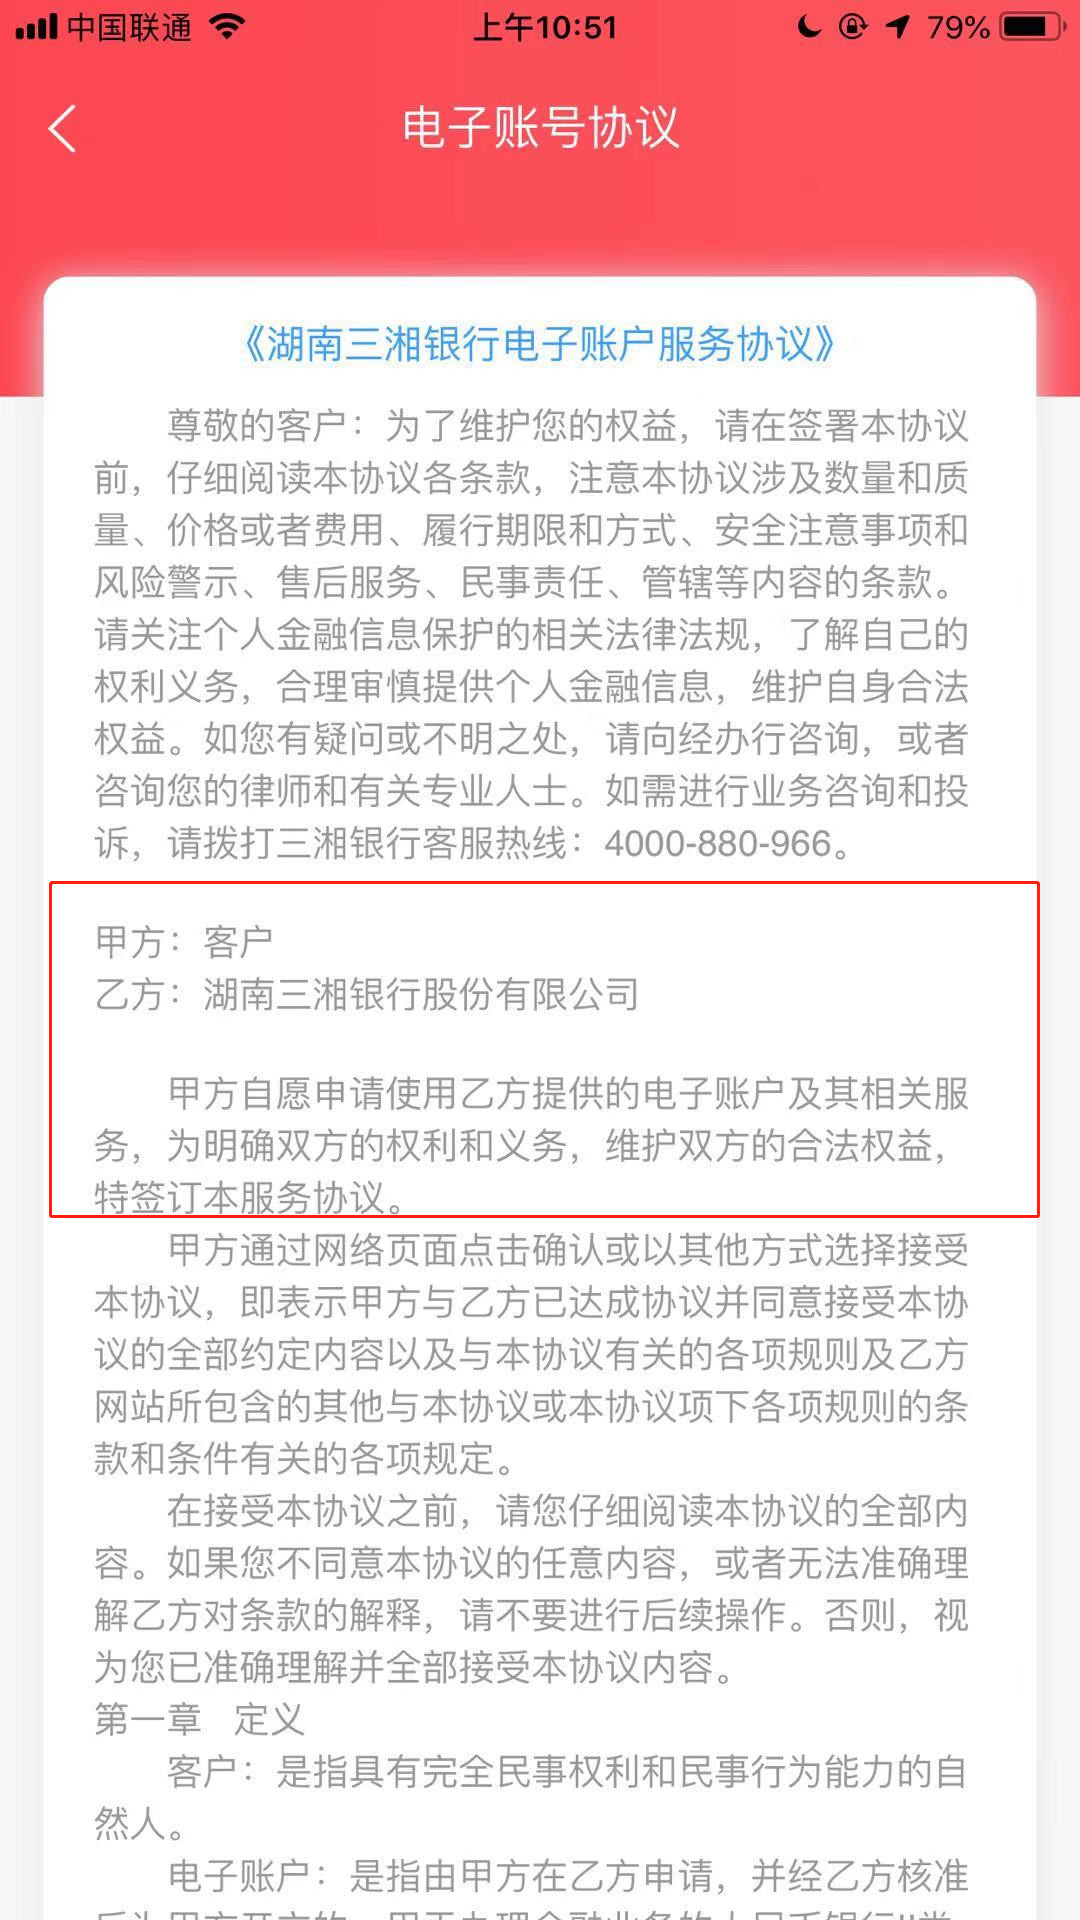 注册购车APP被开通Ⅱ类账户 湖南三湘银行遭客户质疑